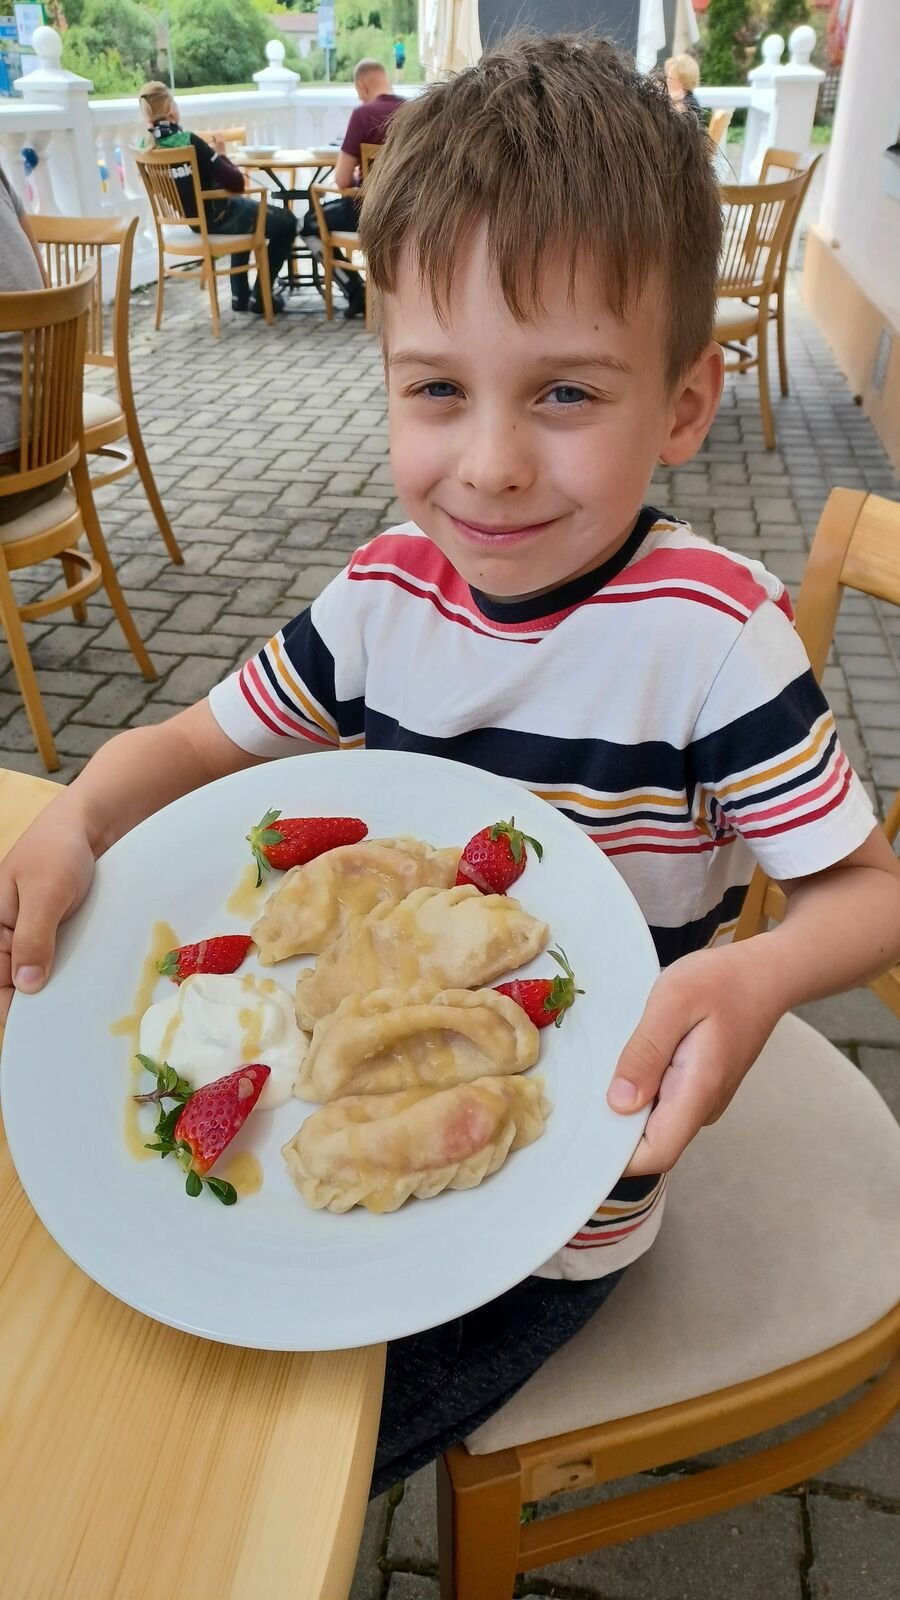 Tonda Lysoněk (6) z Kladna, s rodiči a sestrou Maruškou je kousek odsud na dovolené. Dal si vareniky s jahodami a byl z nich naprosto nadšený.